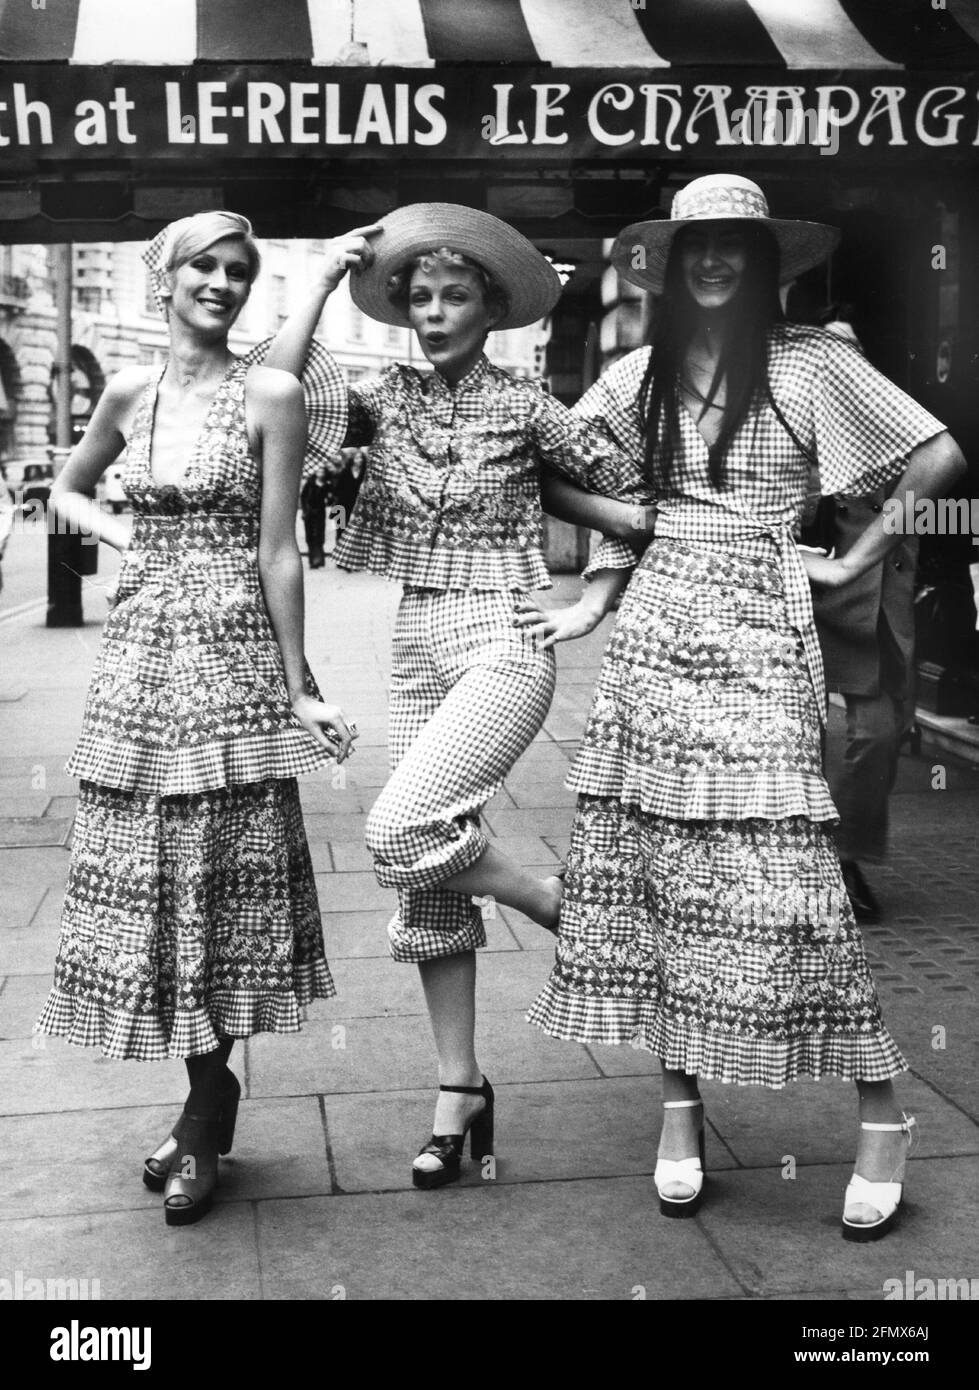 Mode, 70er Jahre, Damenmode, 3 Modelle mit Plateauschuhen und bunt gemusterten Kleidern, London, ZUSÄTZLICHE-RIGHTS-CLEARANCE-INFO-NOT-AVAILABLE Stockfoto